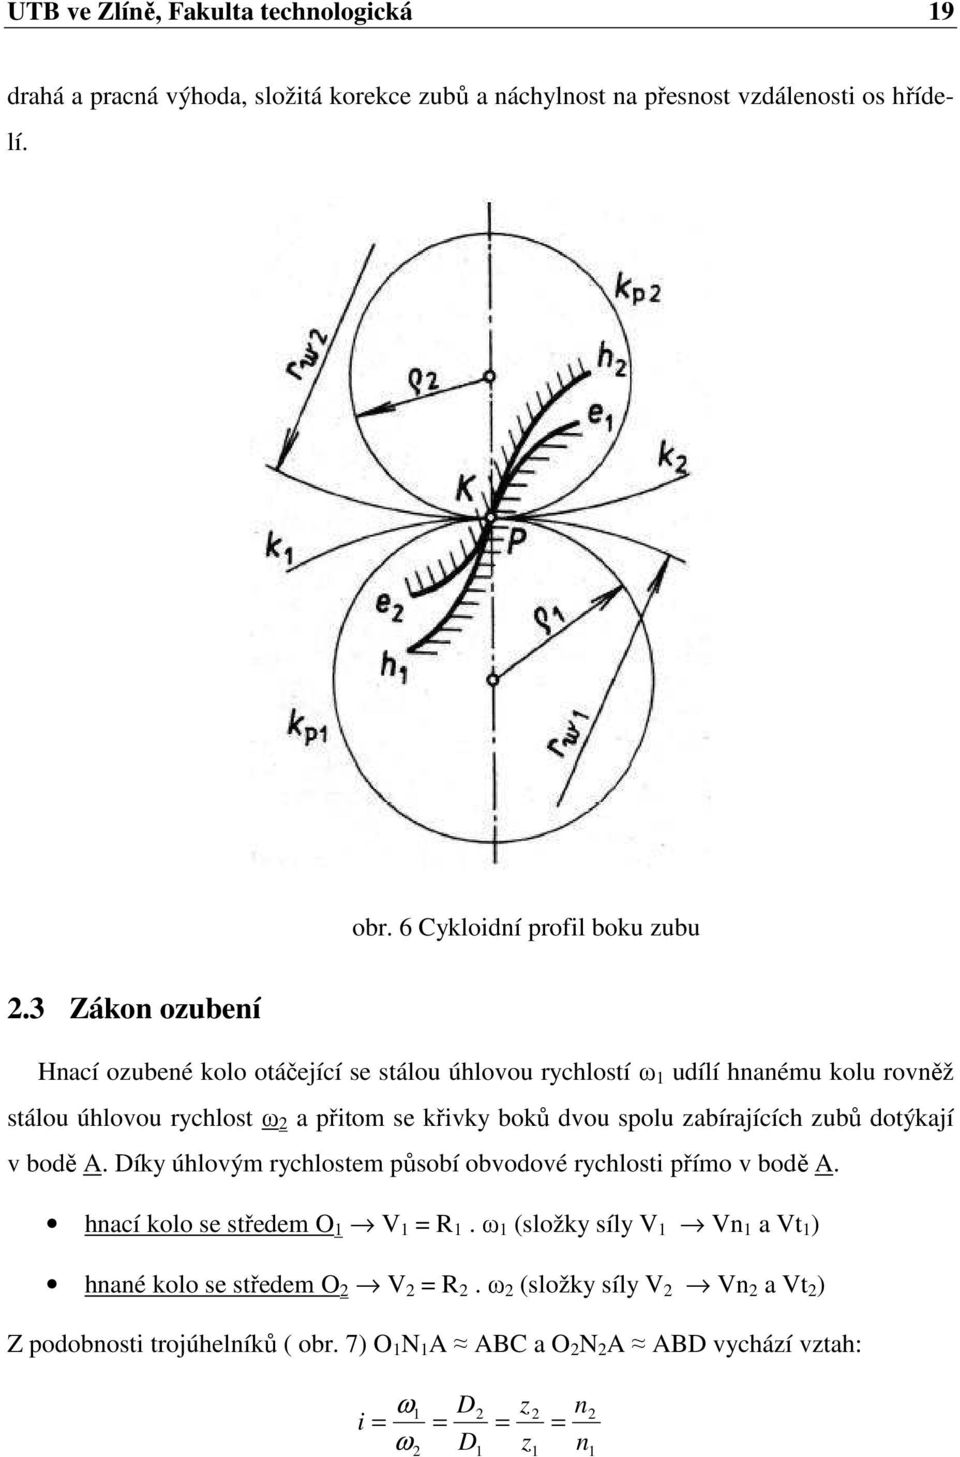 3 Zákon ozubení Hnací ozubené kolo otáčející se stálou úhlovou rychlostí ω uílí hnanému kolu rovněž stálou úhlovou rychlost ω a přitom se křivky boků vou